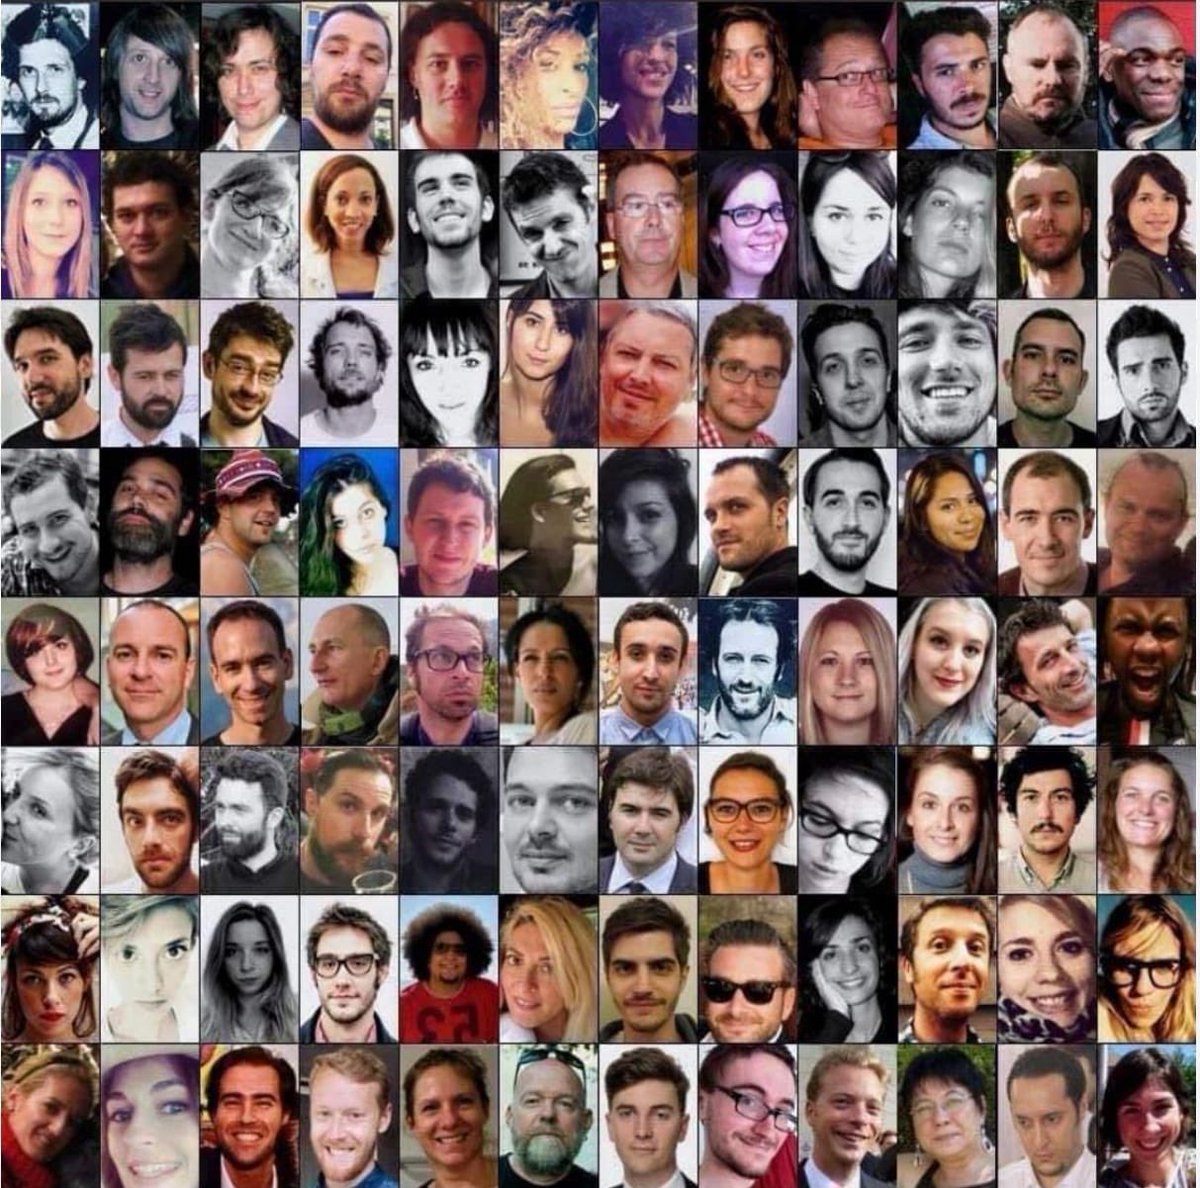 🇫🇷 En France, il y a 8 ans, 
130 vies ont été fauchées et 413 personnes blessées par la barbarie islamiste. 
Leur absence résonne toujours dans nos cœurs. Contrairement à la plupart des journaux, nous n'oublions pas.

#Bataclan
#13Novembre
#NeJamaisOublier